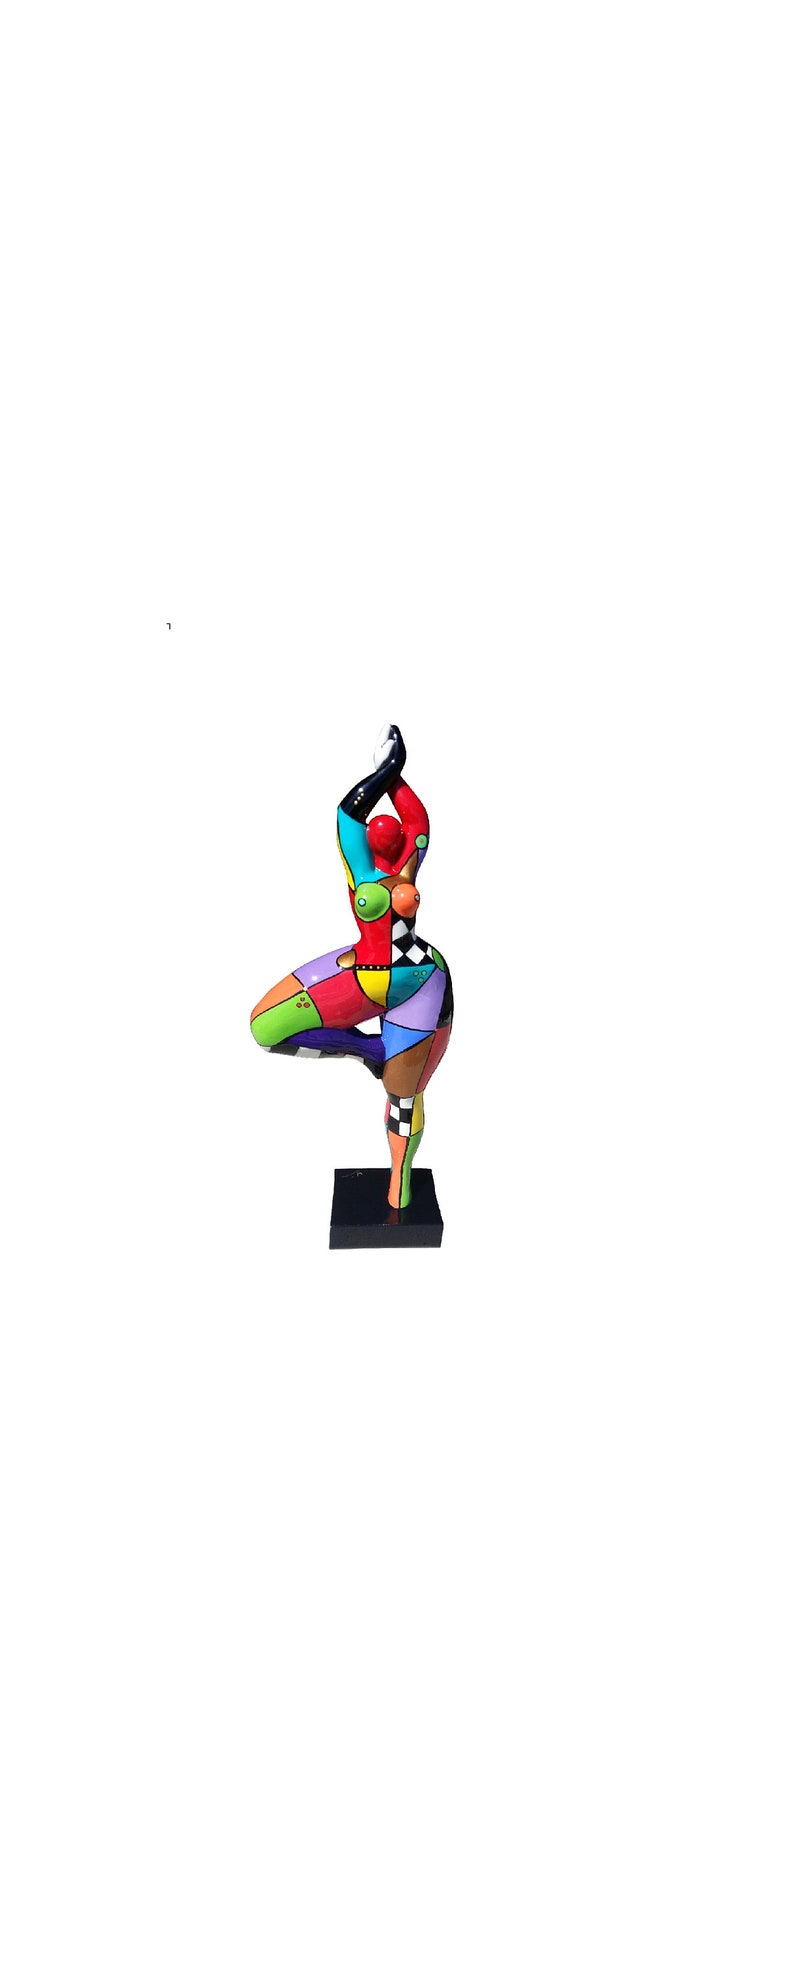 Große mehrfarbige runde Frauenstatue Nana-Tänzerin, Modell Mina, Dekoration Laure Terrier, Höhe 52 Zentimeter Bild 1